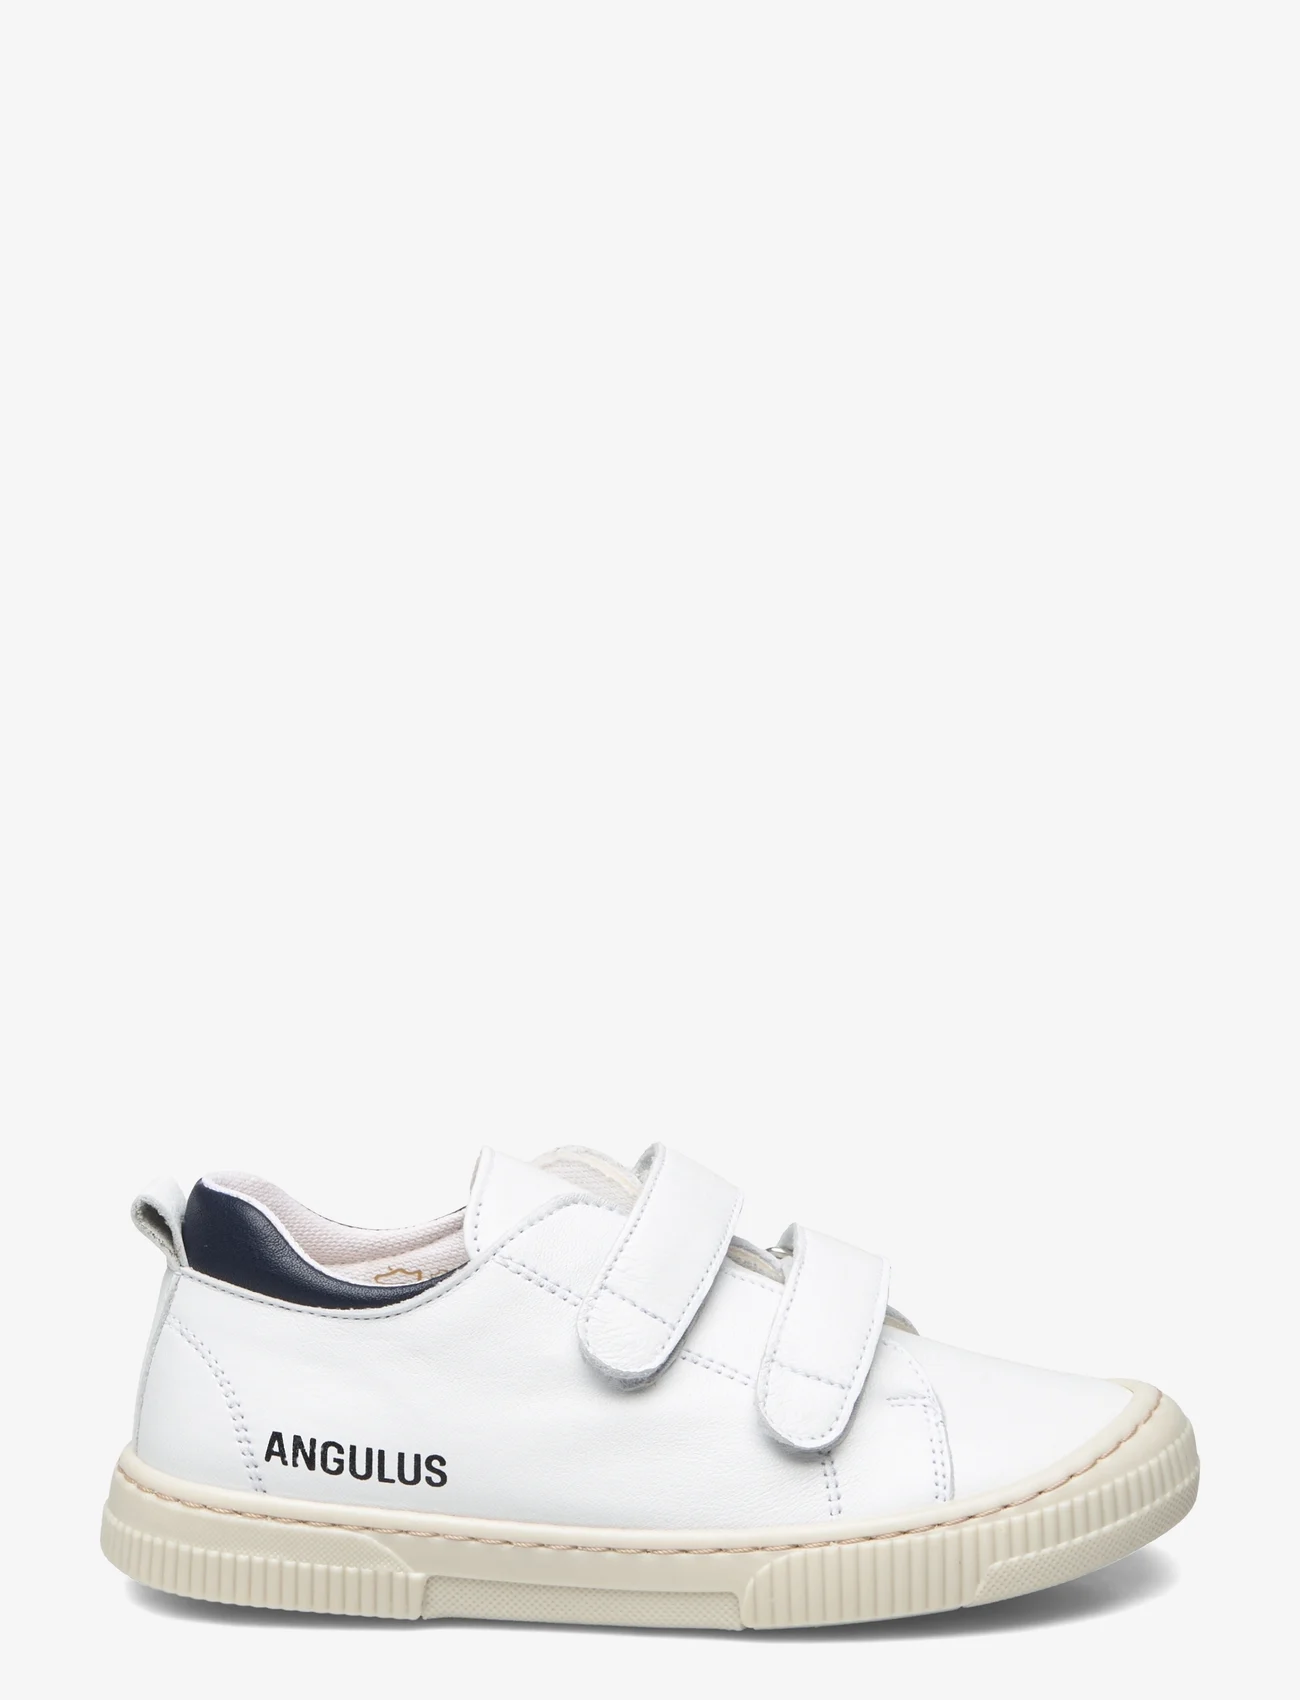 ANGULUS - Shoes - flat - with velcro - vasaras piedāvājumi - 1521/2585 hvid/navy - 1